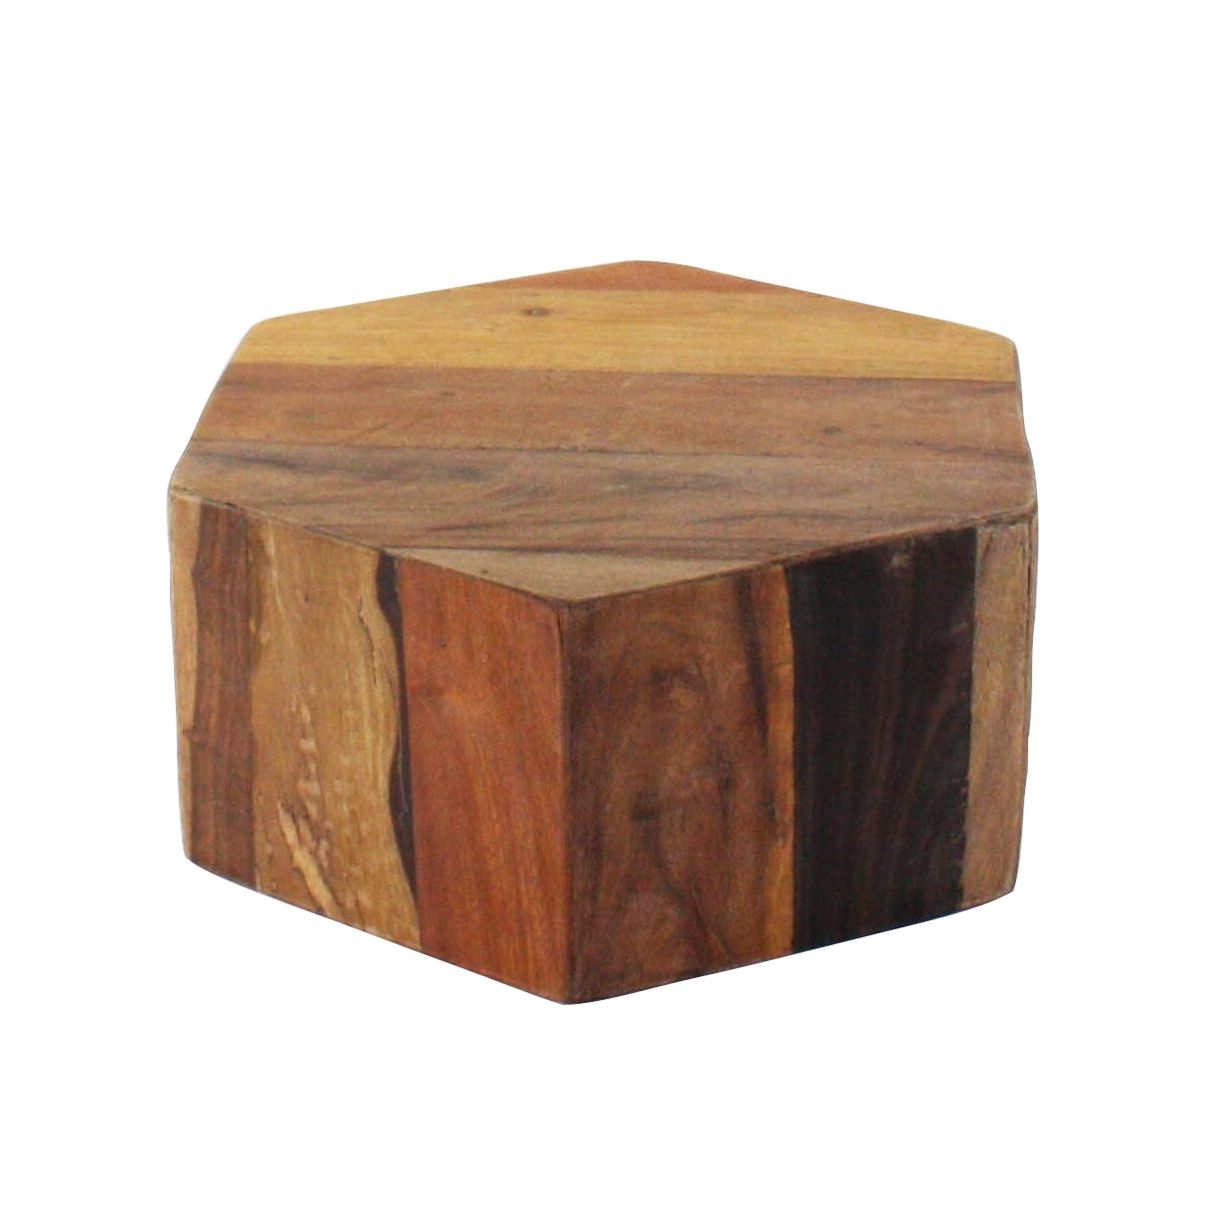 Short wooden stool